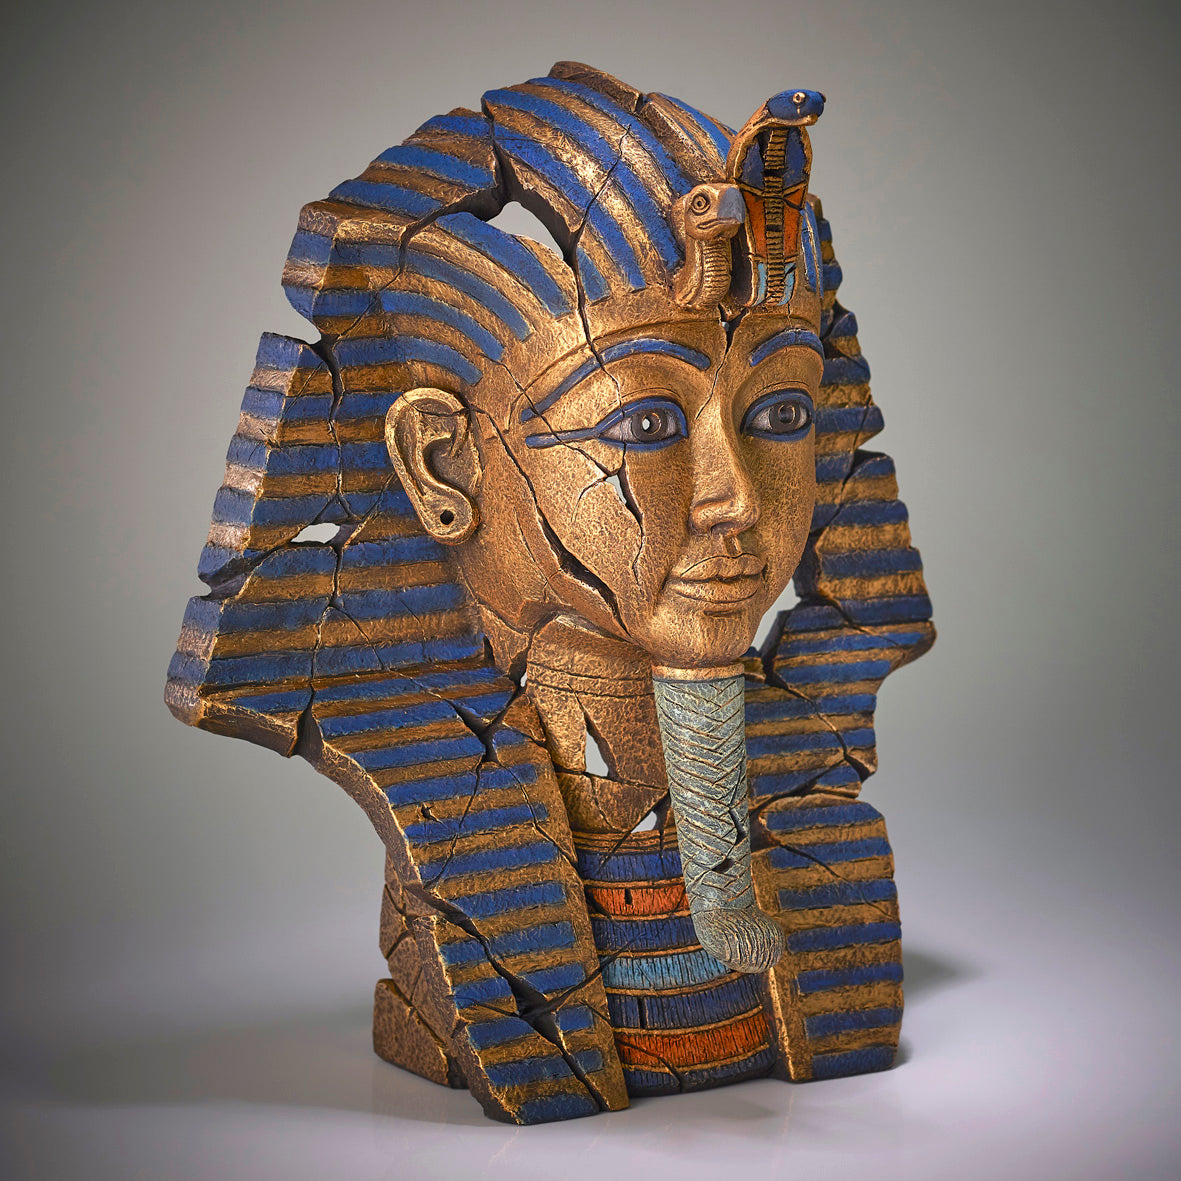 Tutankhamun from Edge Sculpture by Matt Buckley